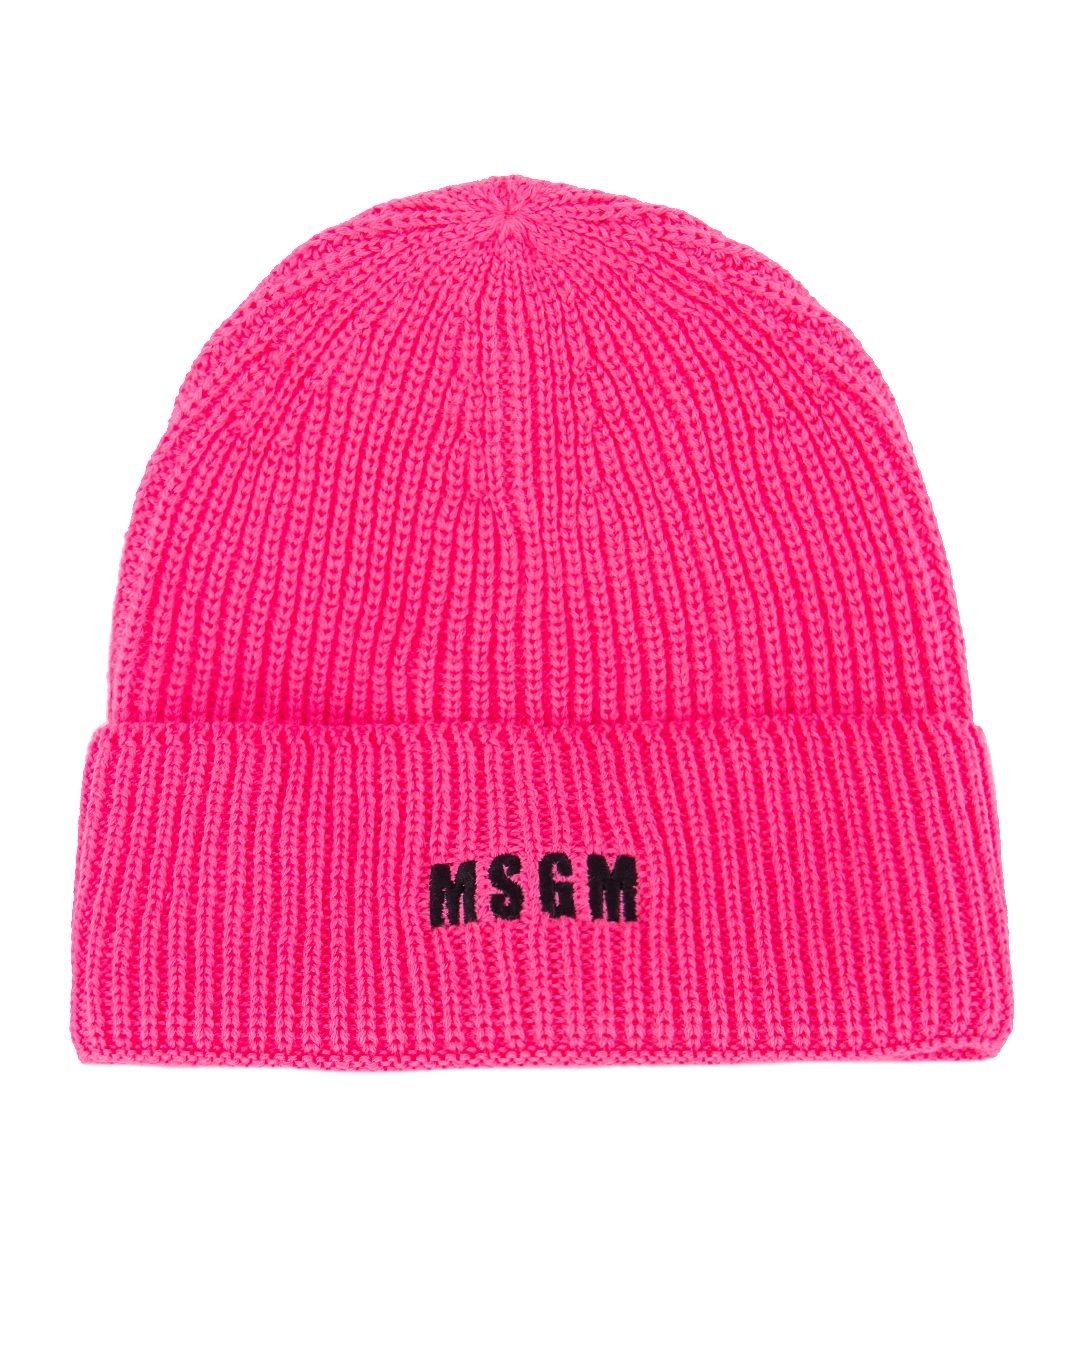 шапка MSGM 3541MDL08 розовый UNI, размер UNI - фото 1